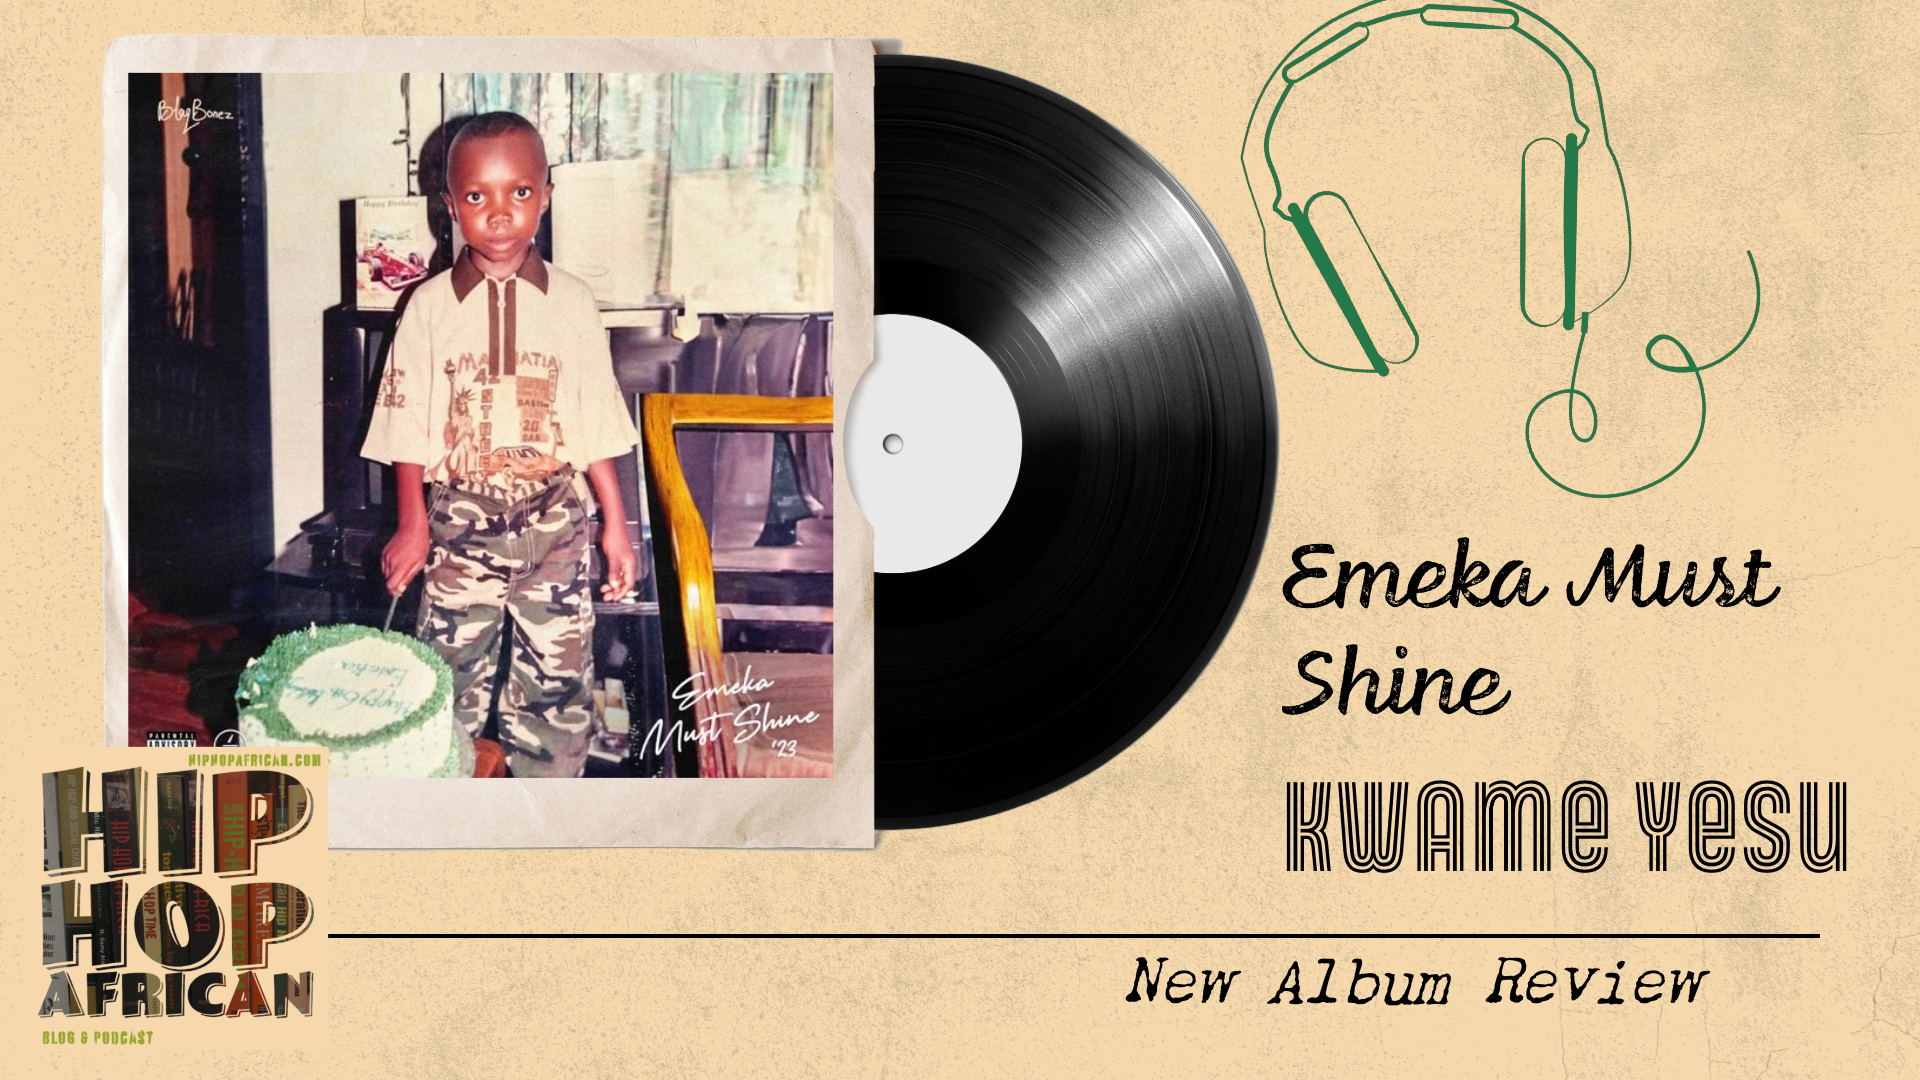 Emeka Must Shine by Blaqbonez (Album Review)